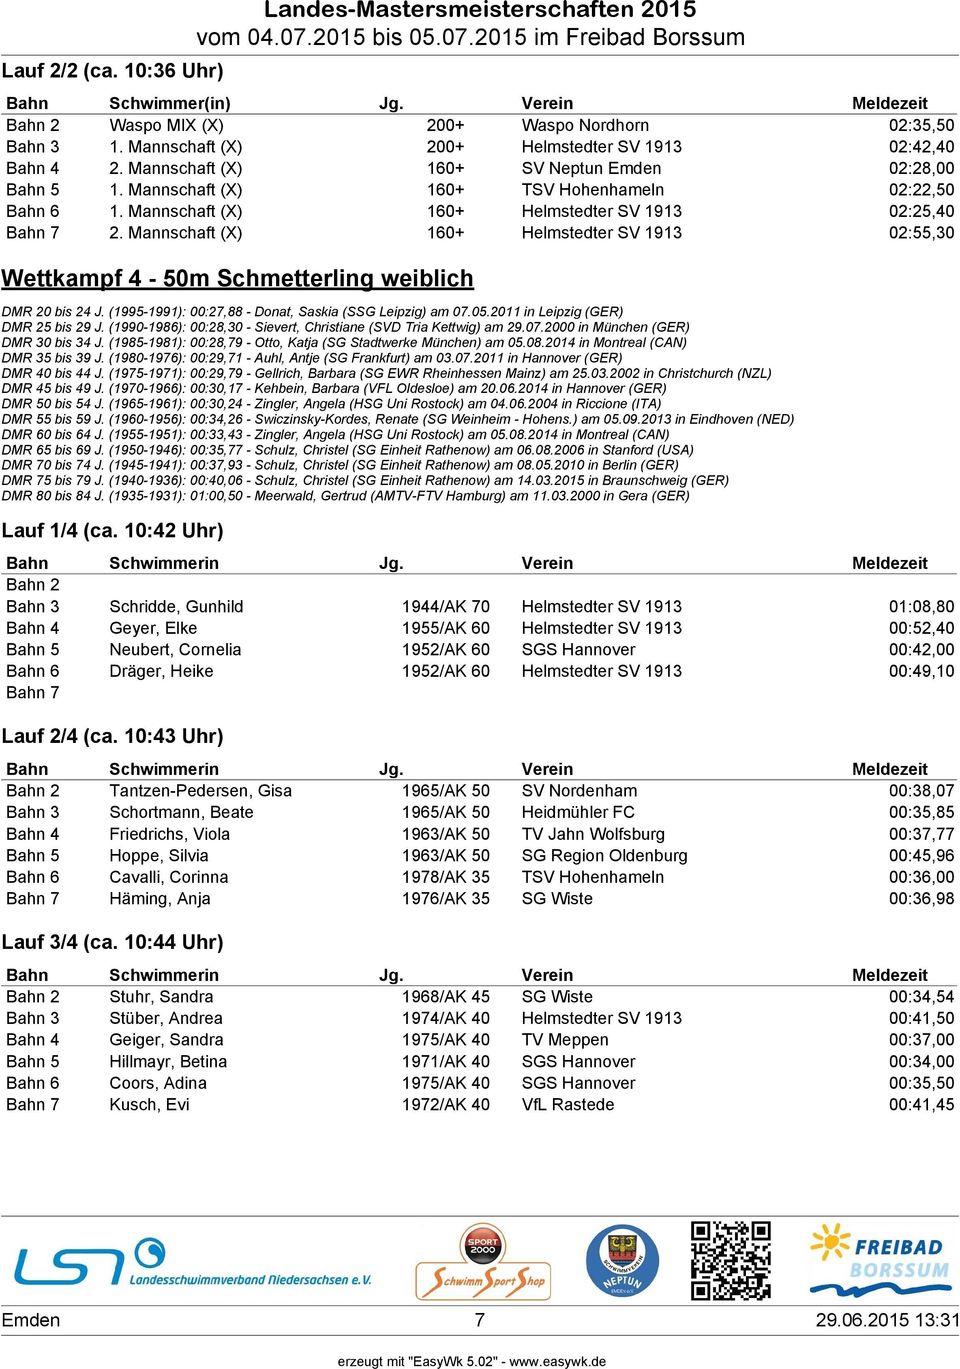 Mannschaft (X) 160+ Helmstedter SV 1913 02:55,30 Wettkampf 4-50m Schmetterling weiblich DMR 20 bis 24 J. (1995-1991): 00:27,88 - Donat, Saskia (SSG Leipzig) am 07.05.